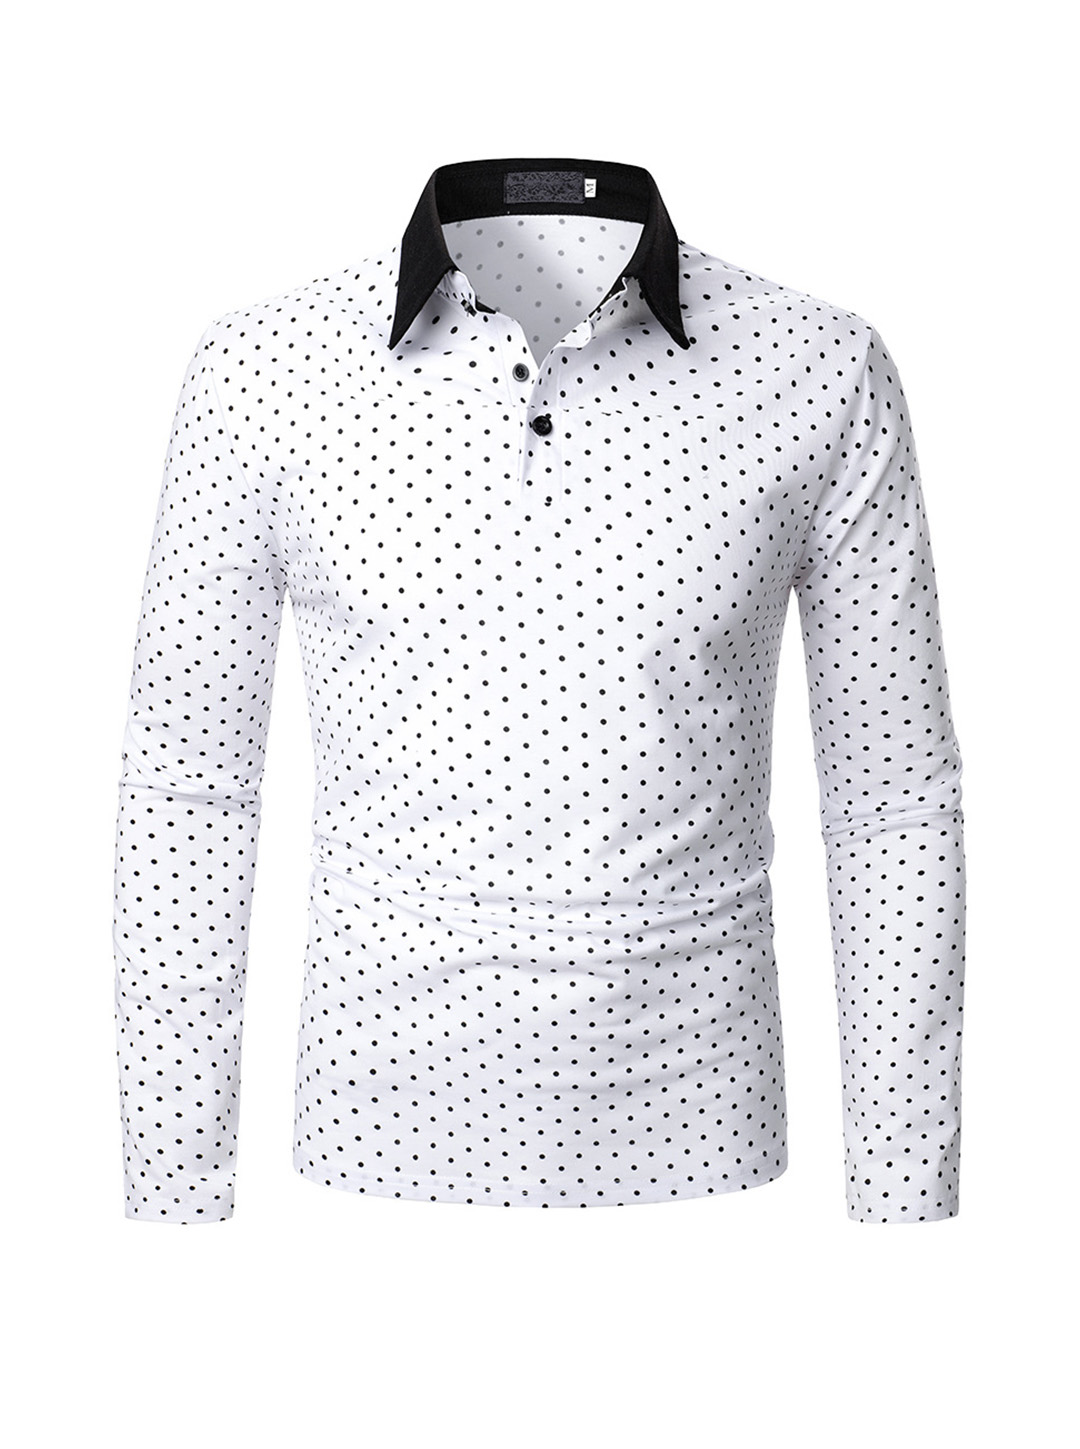 amazon aliexpress foreign trade men's polo shirt small dot fashion design men's long sleeve polo cdb13